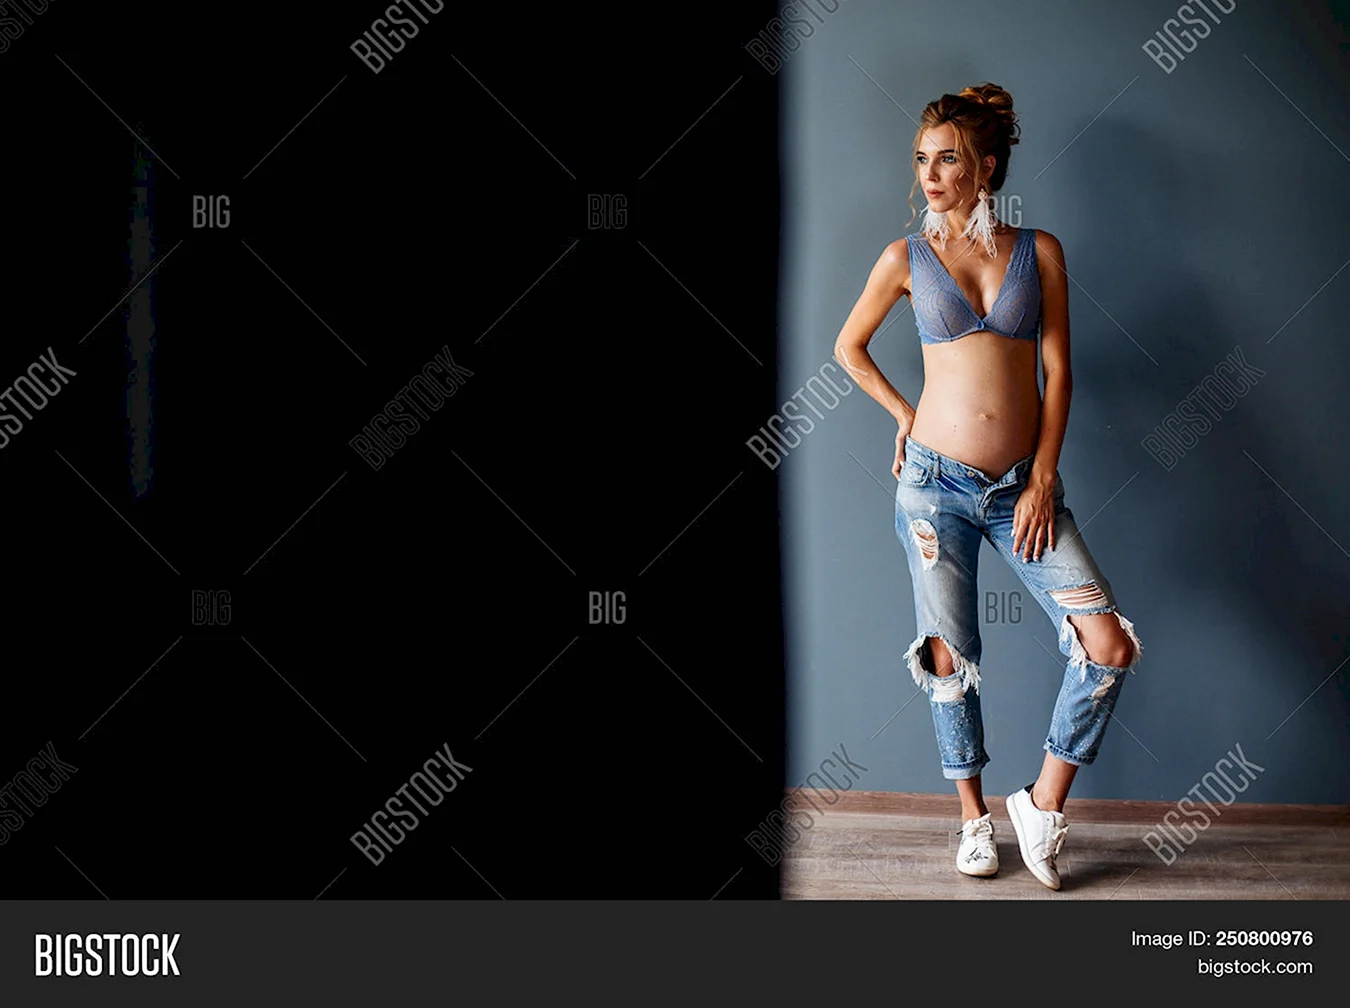 Беременная фотосессия в джинсах и джинсовой